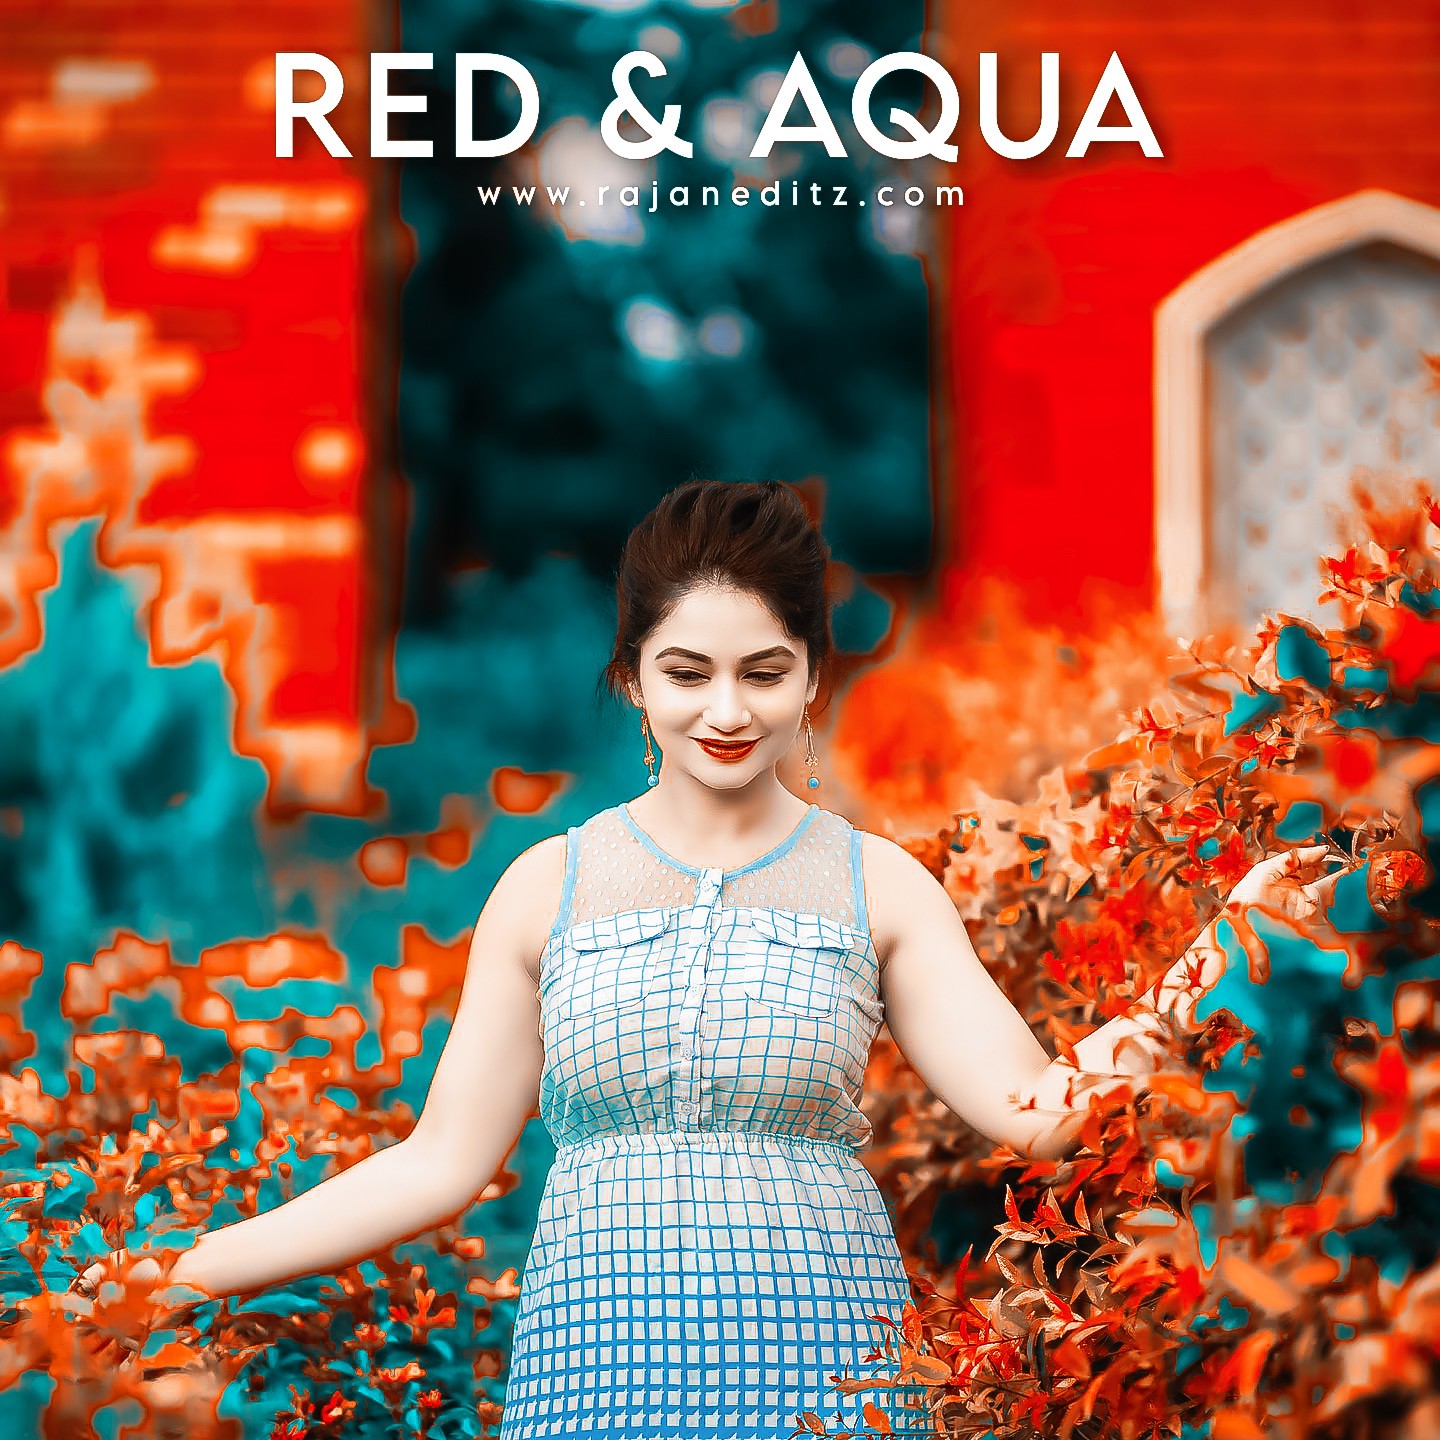 Red and aqua lightroom preset